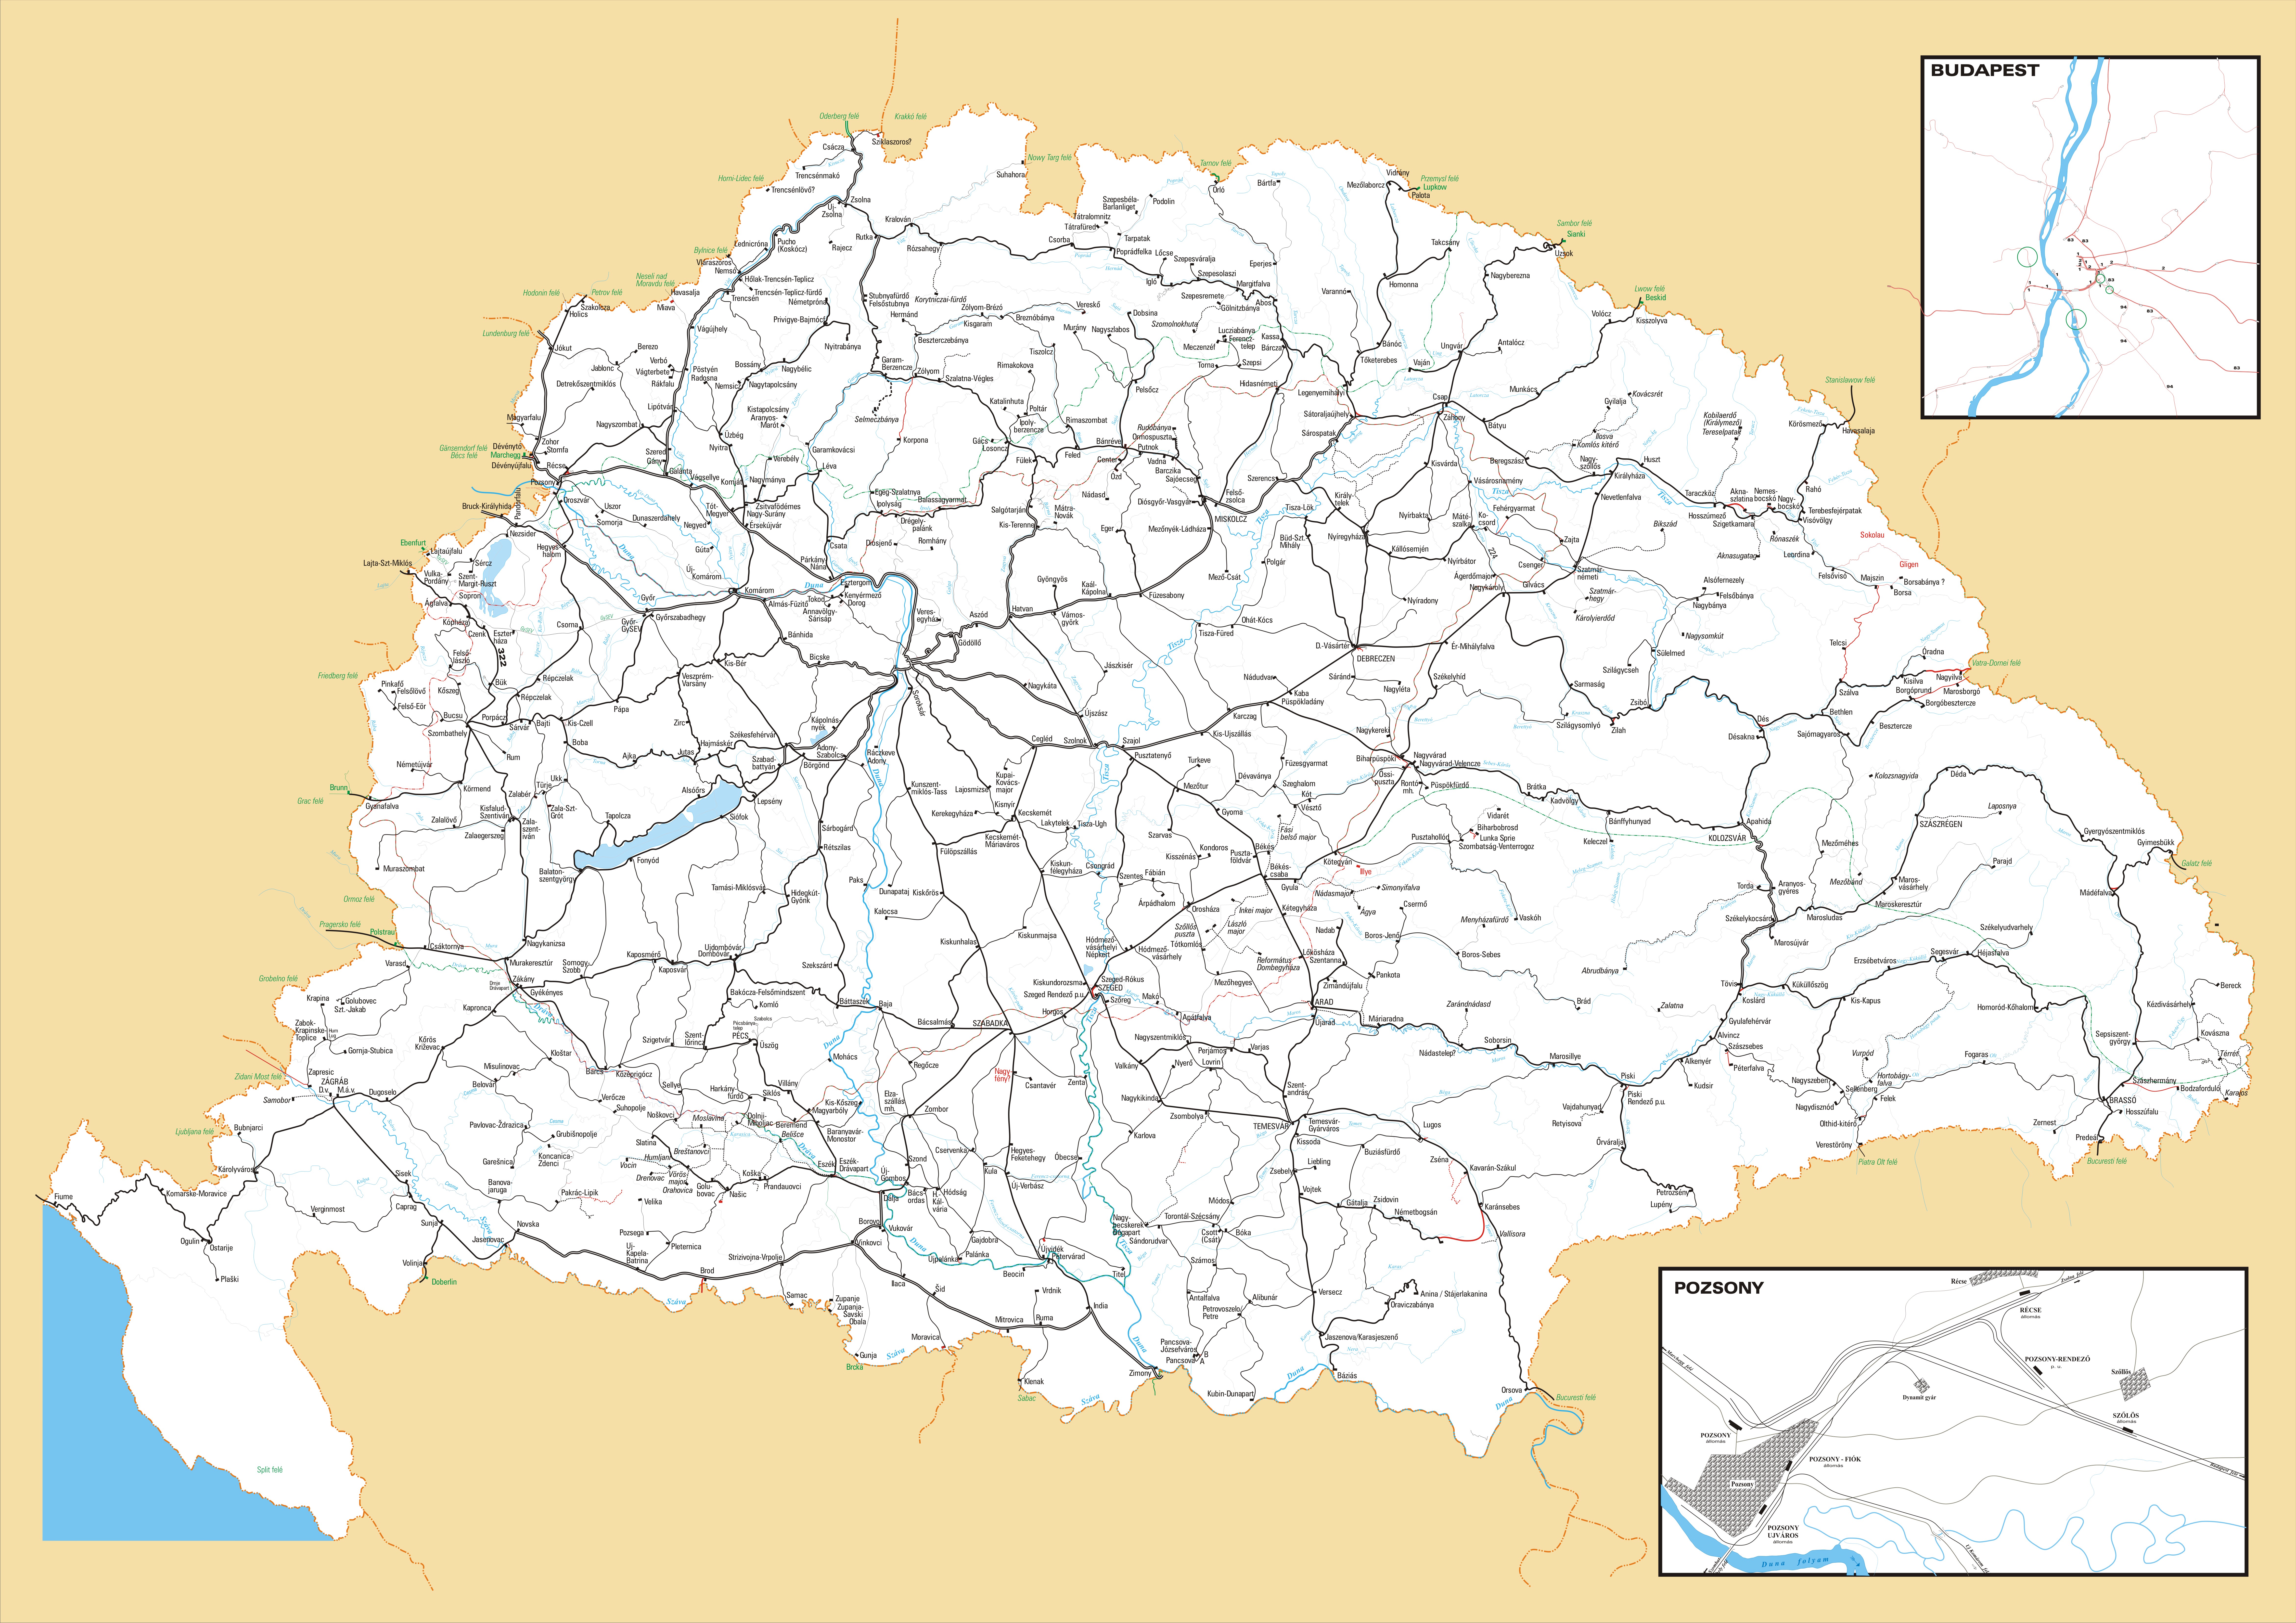 magyarország nagy térkép Vasúti térképek   Magyarország vasútállomásai és vasúti megállóhelyei magyarország nagy térkép